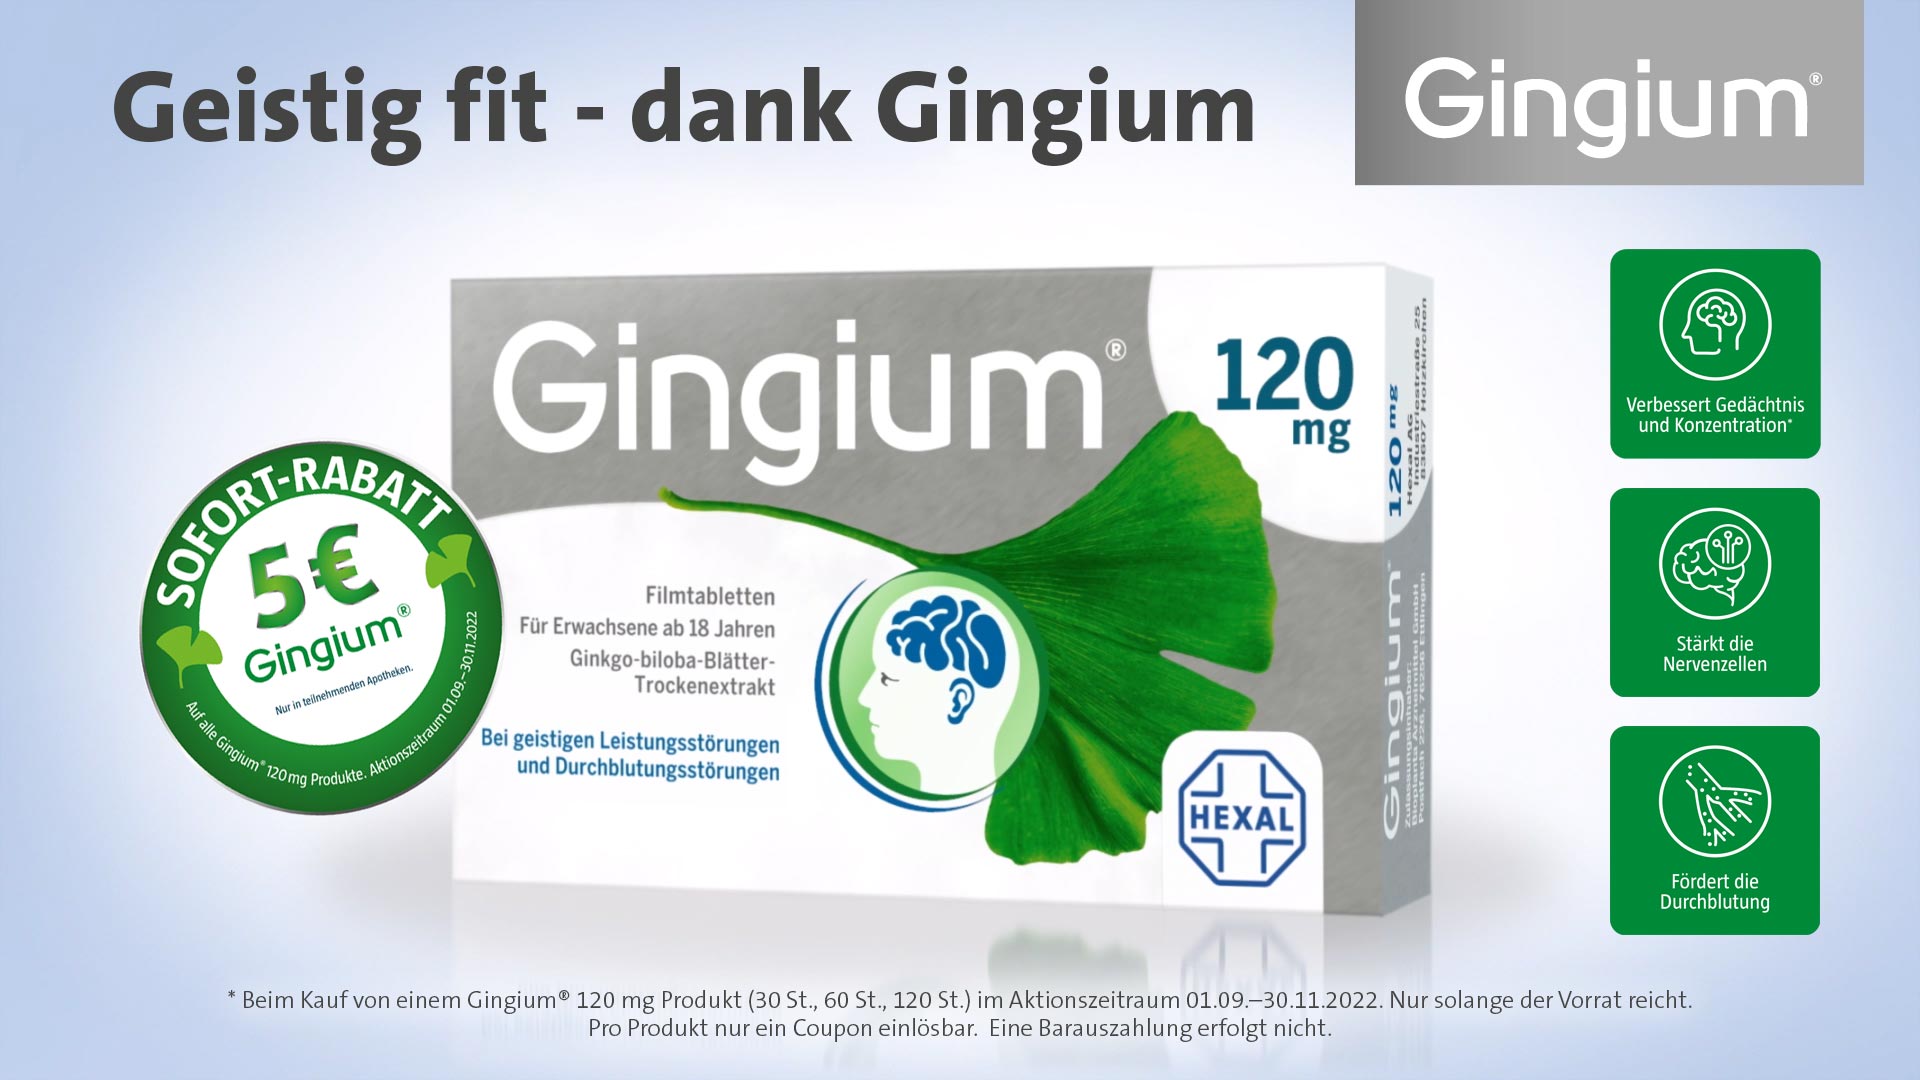 Gingium -5 Euro Sofort Rabatt